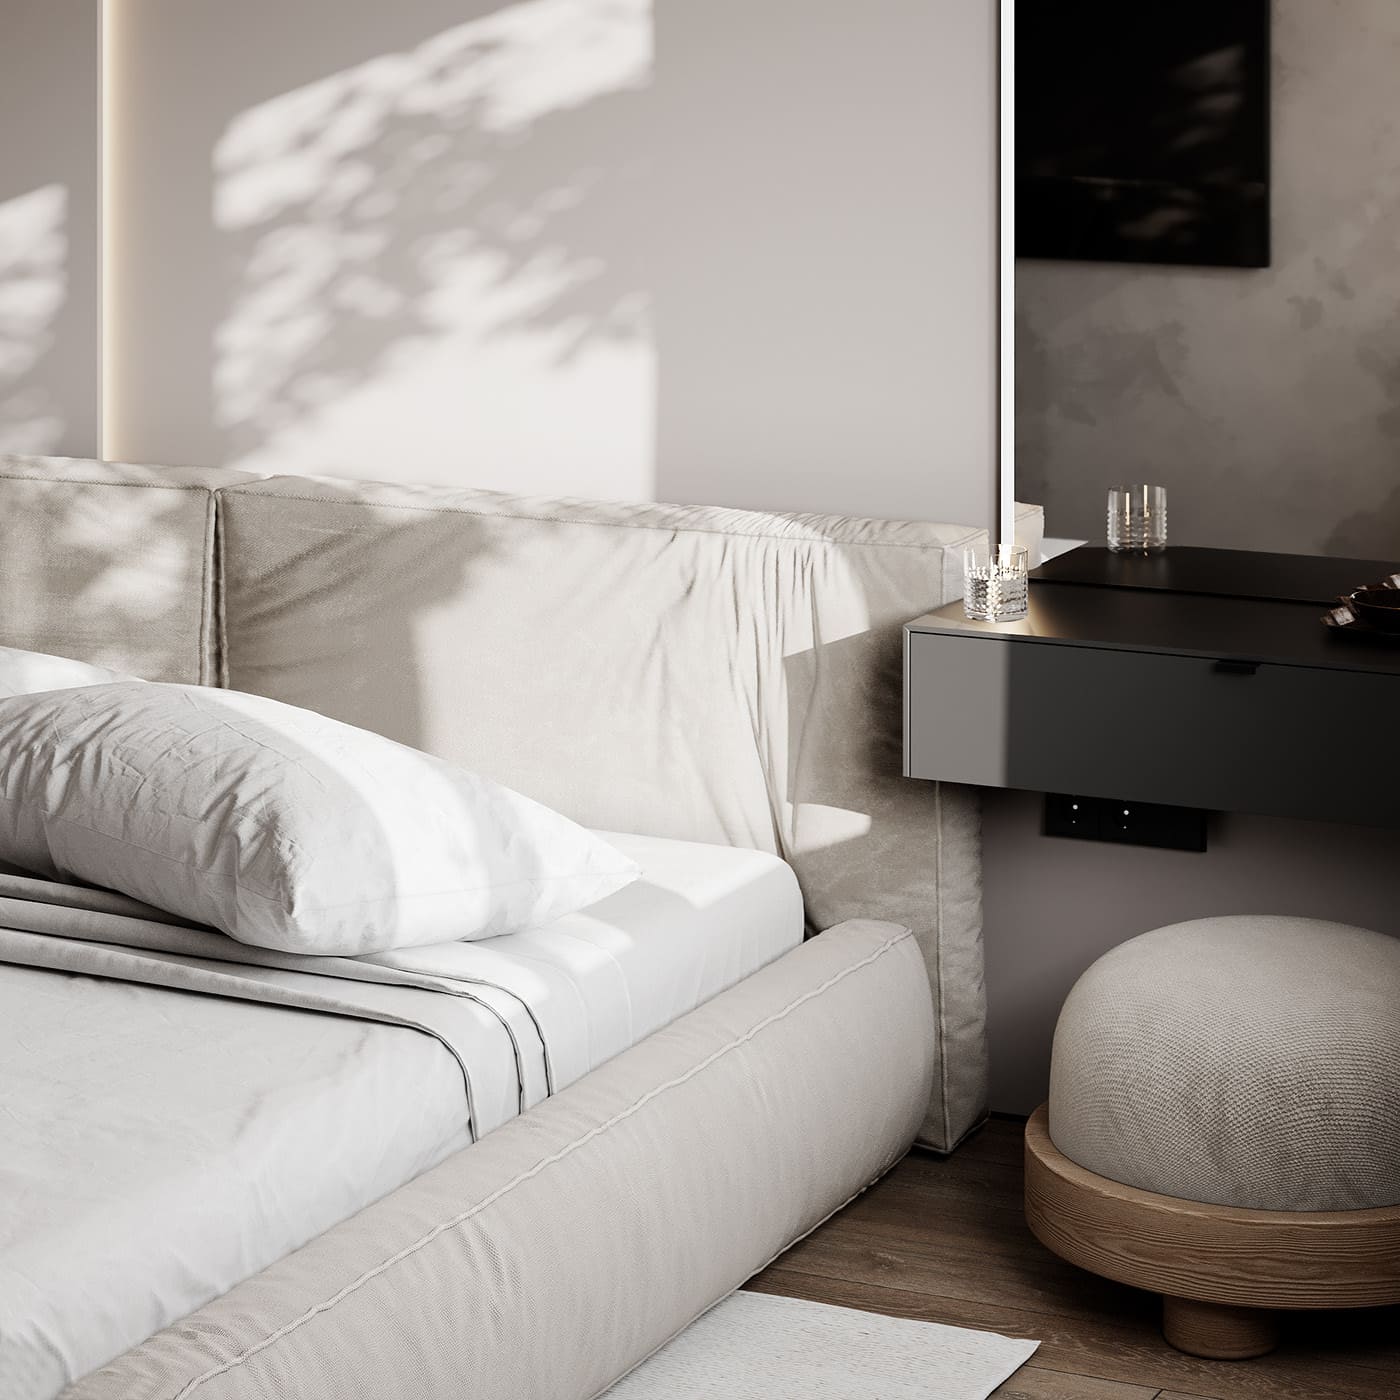 Лаконичная квартира в стиле минимализм, спальня, фото 19